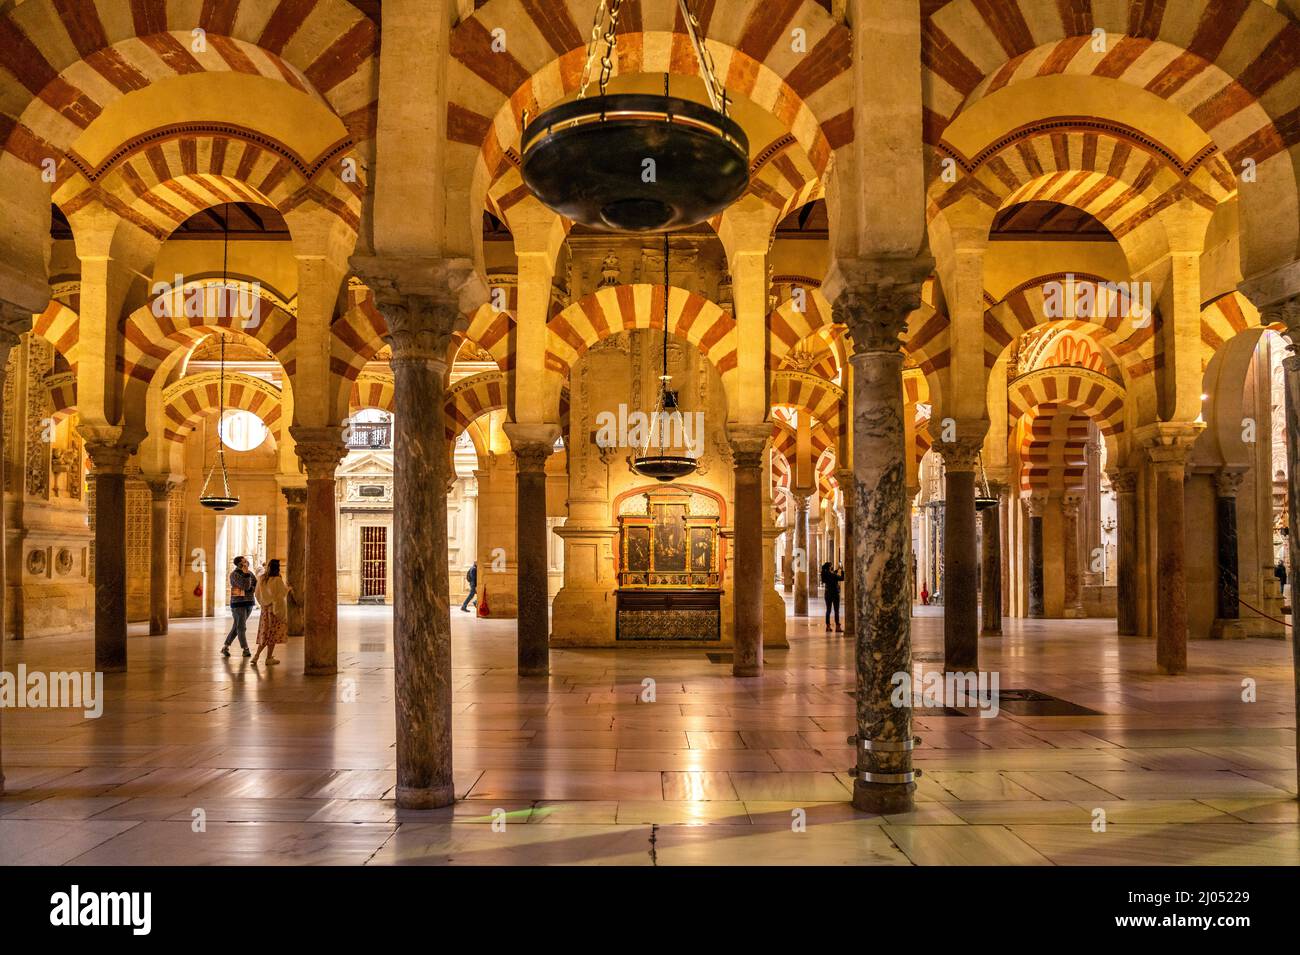 Maurische Säulen und Bögen im Innenraum der Mezquita - Catedral de Córdoba in Cordoba, Andalusien, Spanien | maurische Bögen und Säulen der Mezqu Stockfoto